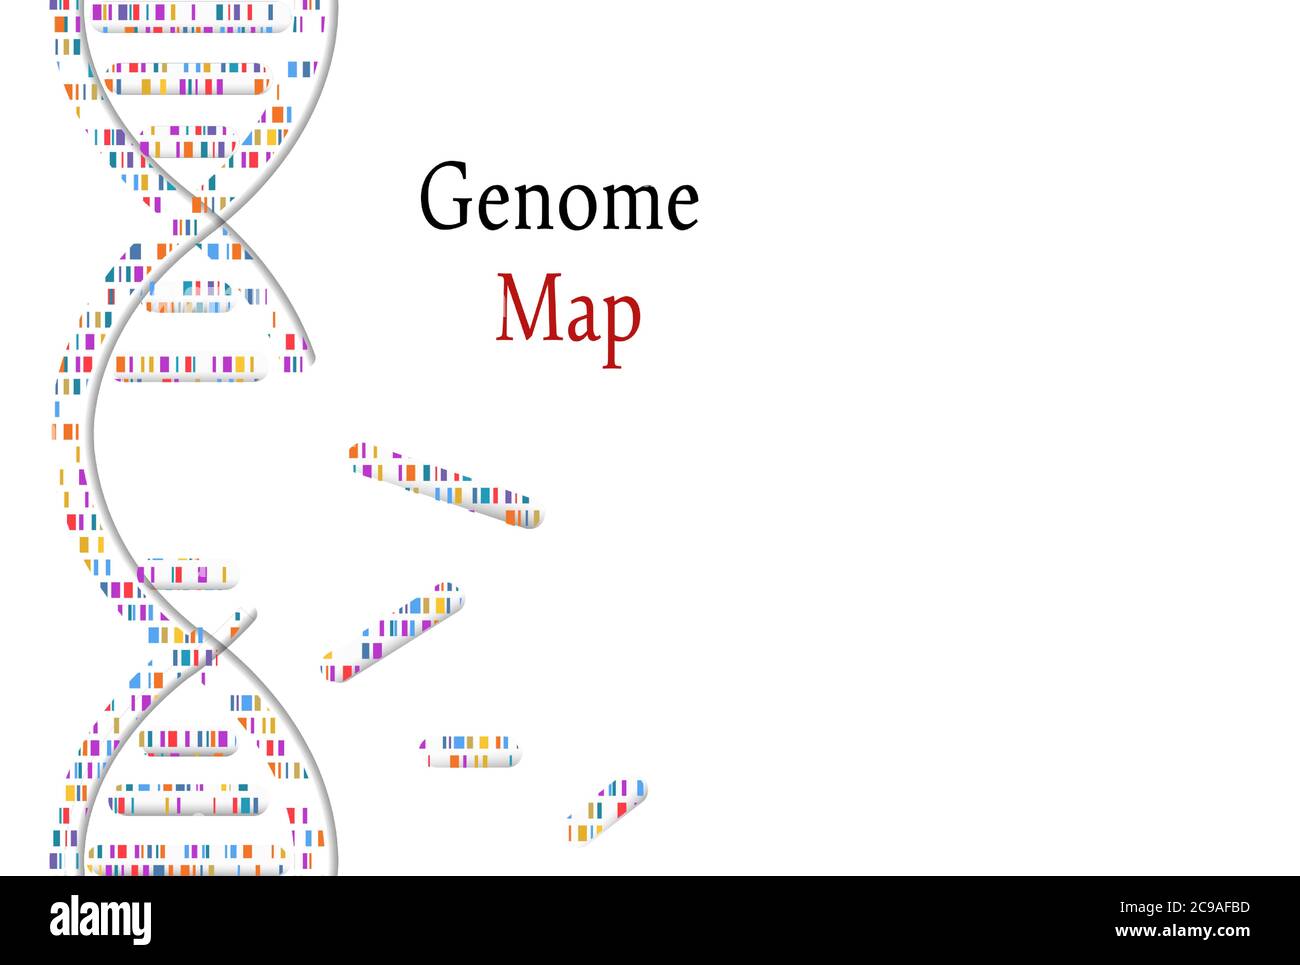 Test del DNA, mappa genomale. Genoma del mosaico e timbro di sigillo con frase genoma. Illustrazione vettoriale. Illustrazione Vettoriale